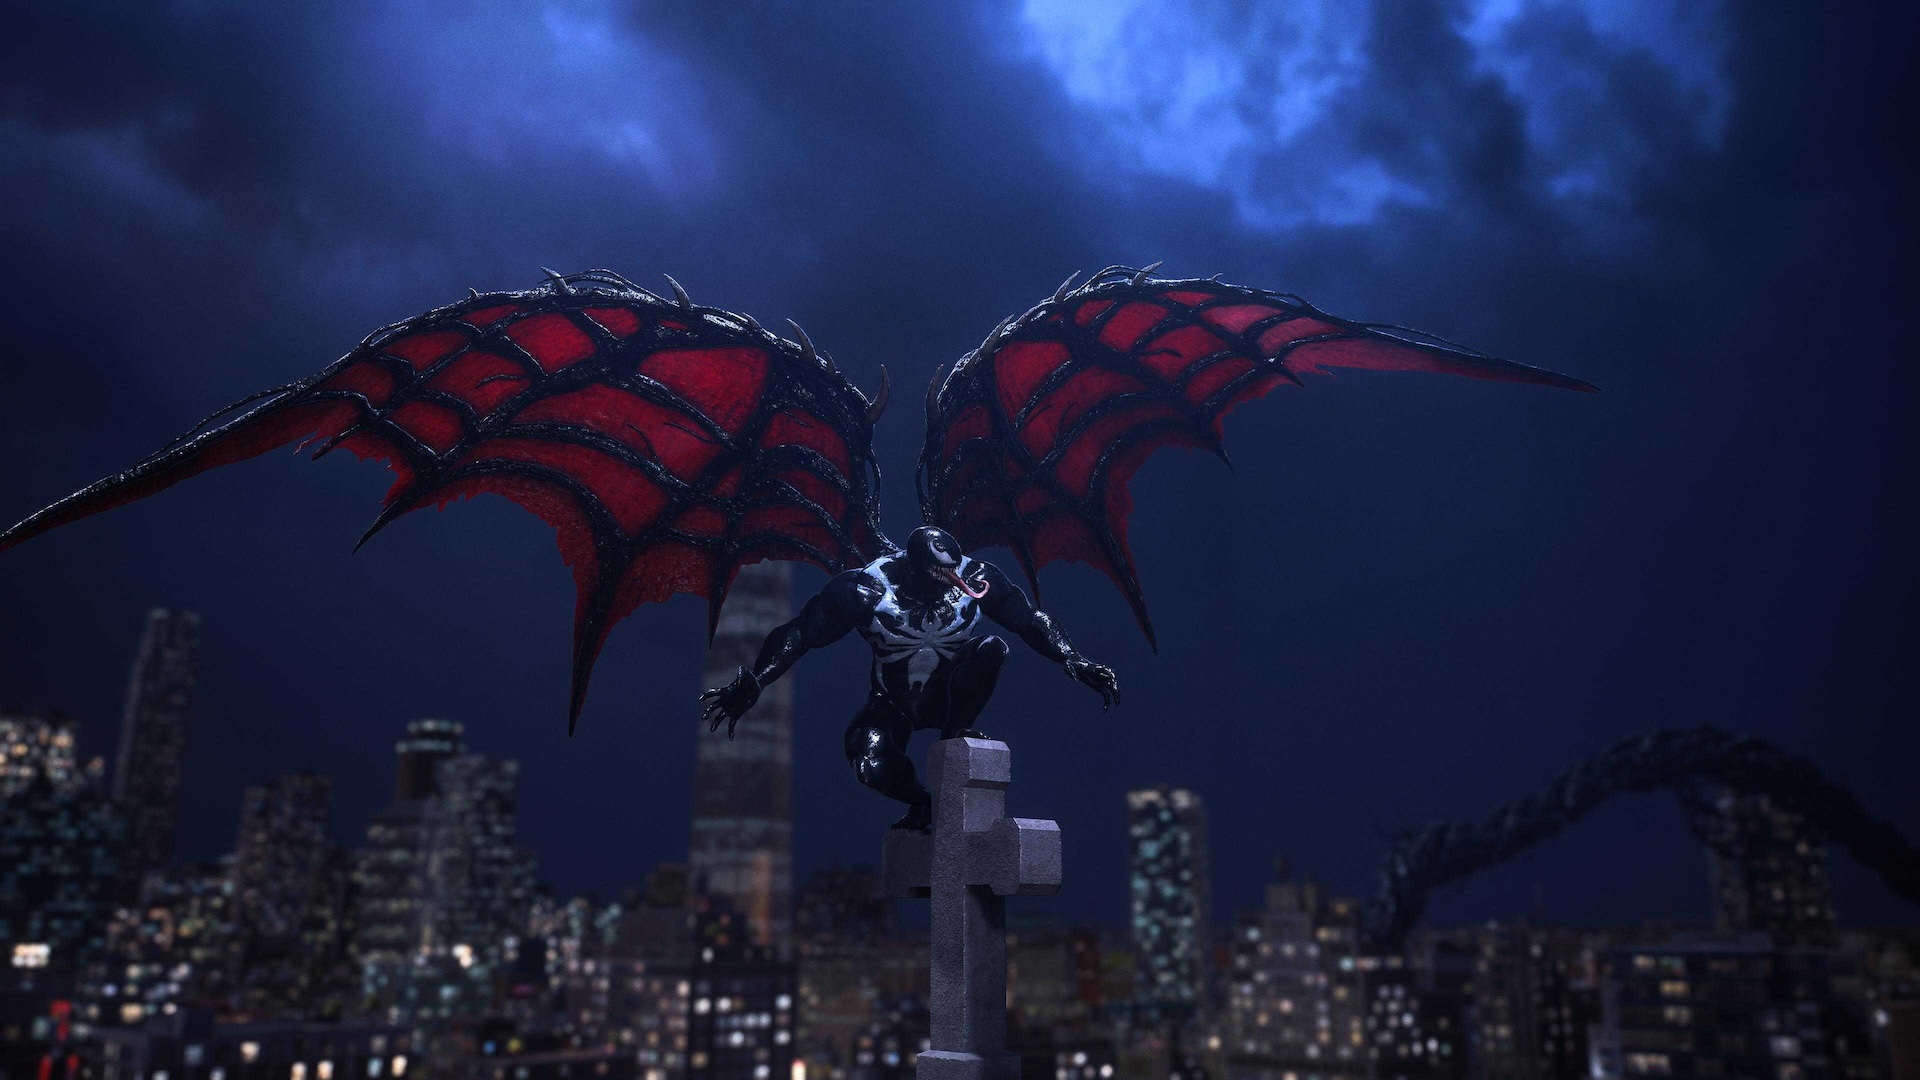 Venom steigt mit roten Flügeln in Vampir-gleicher Gestalt in den Himmel auf